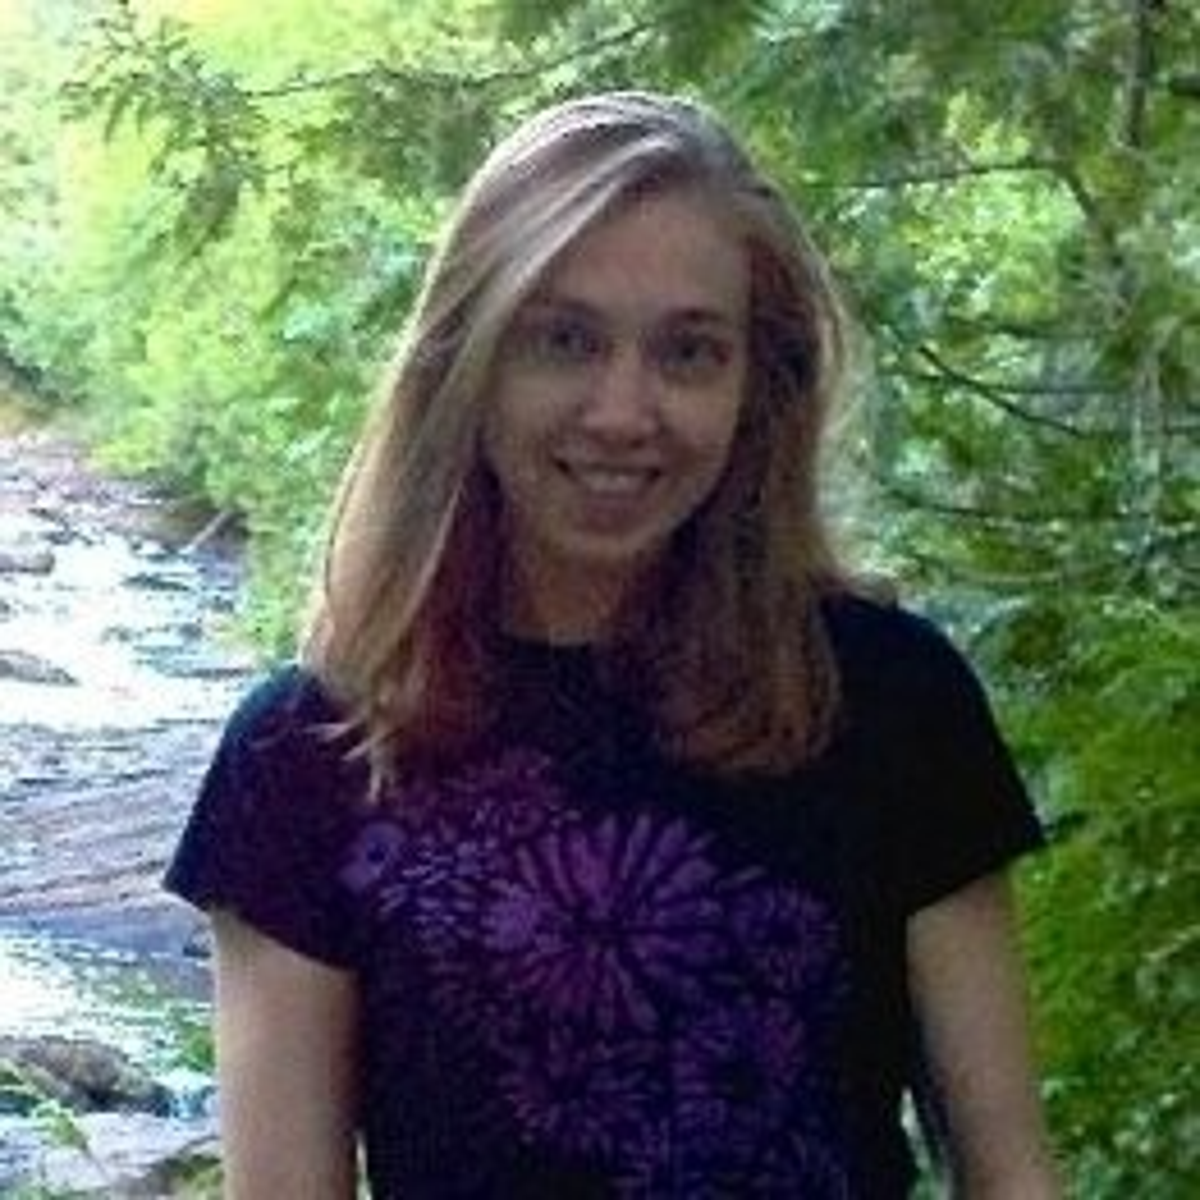 Lauren Erickson Van Wart has been named as the victim of the tragedy (LinkedIn)